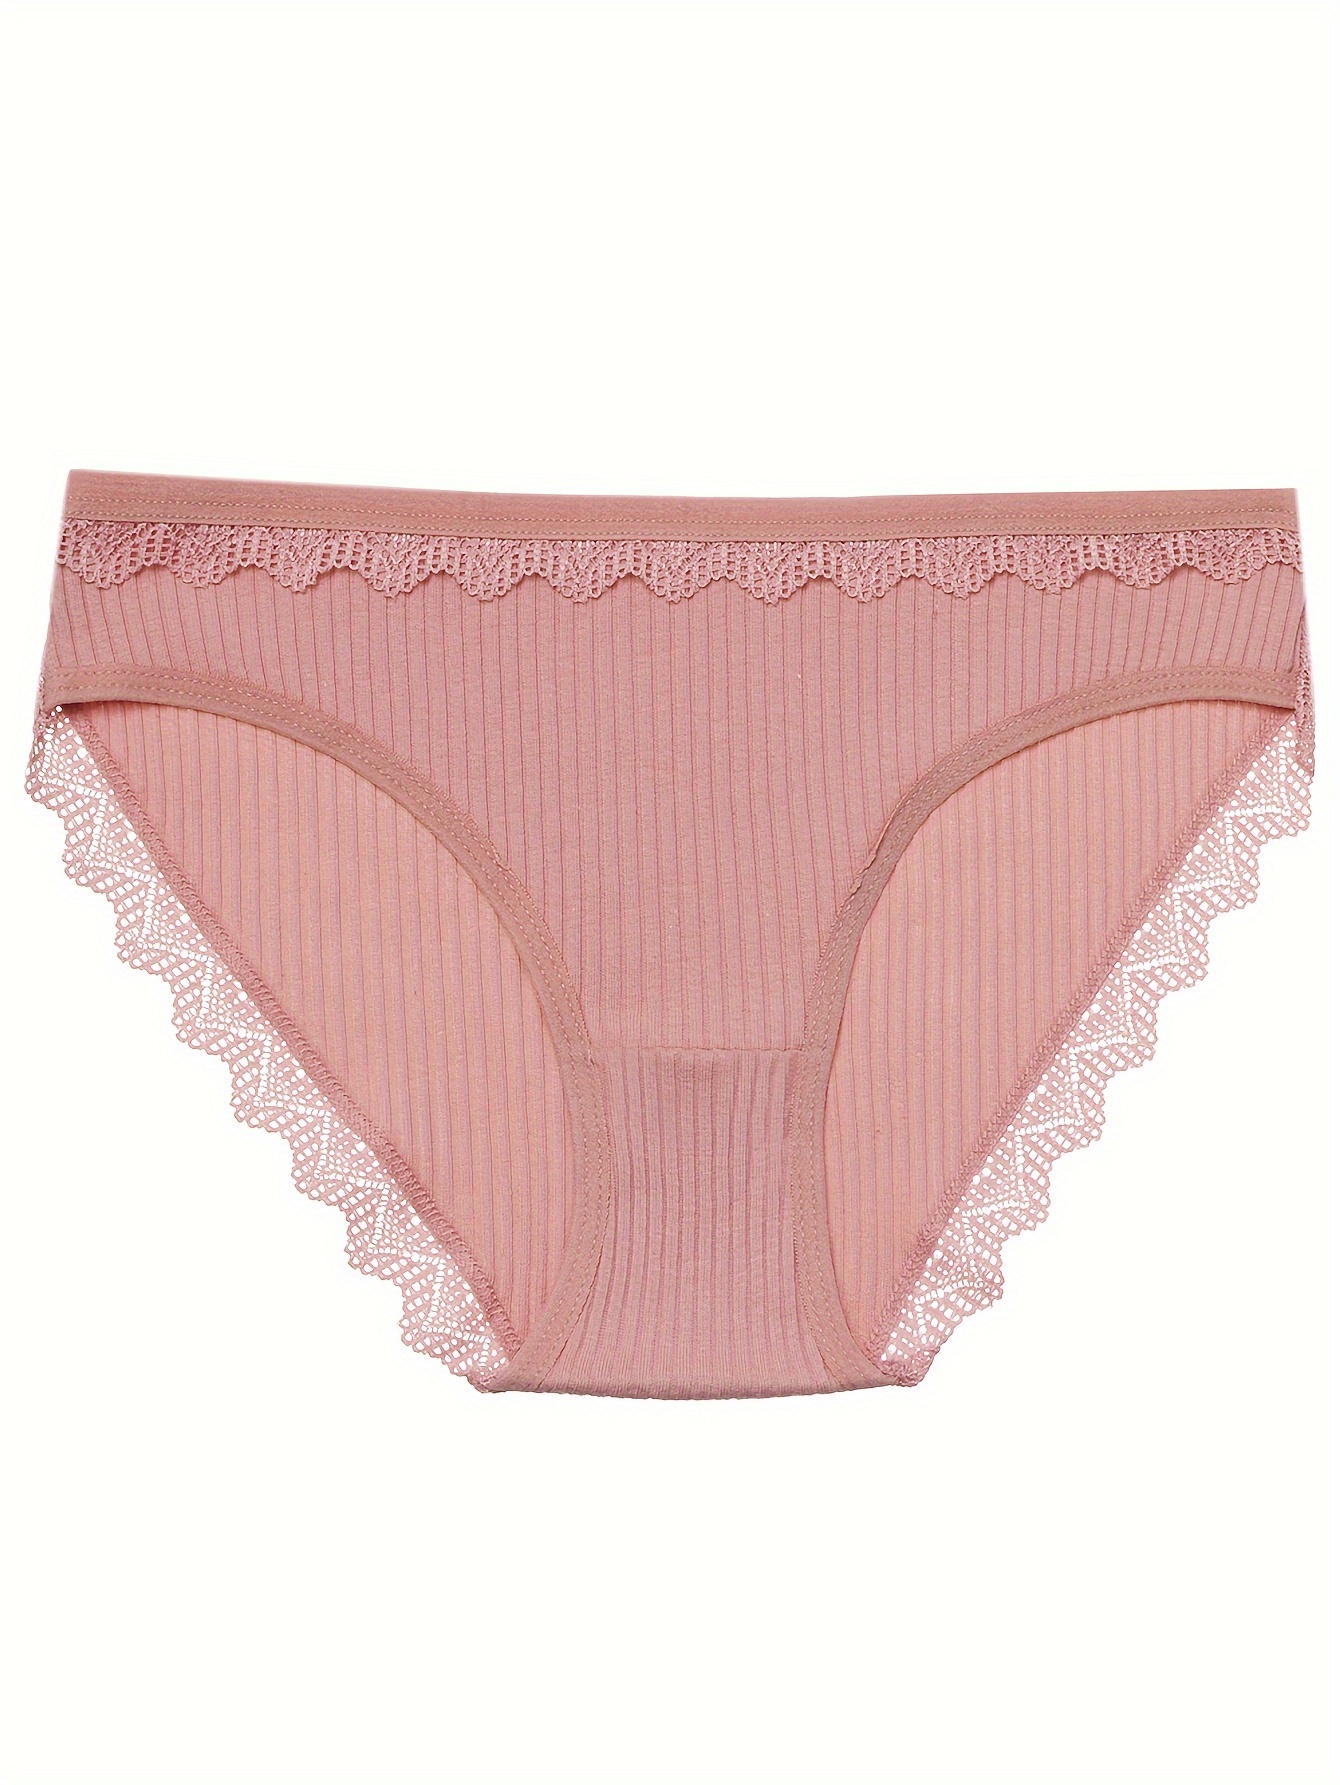 3PCS Lace Panties Soft Breathable Briefs Women Underwear Ladies